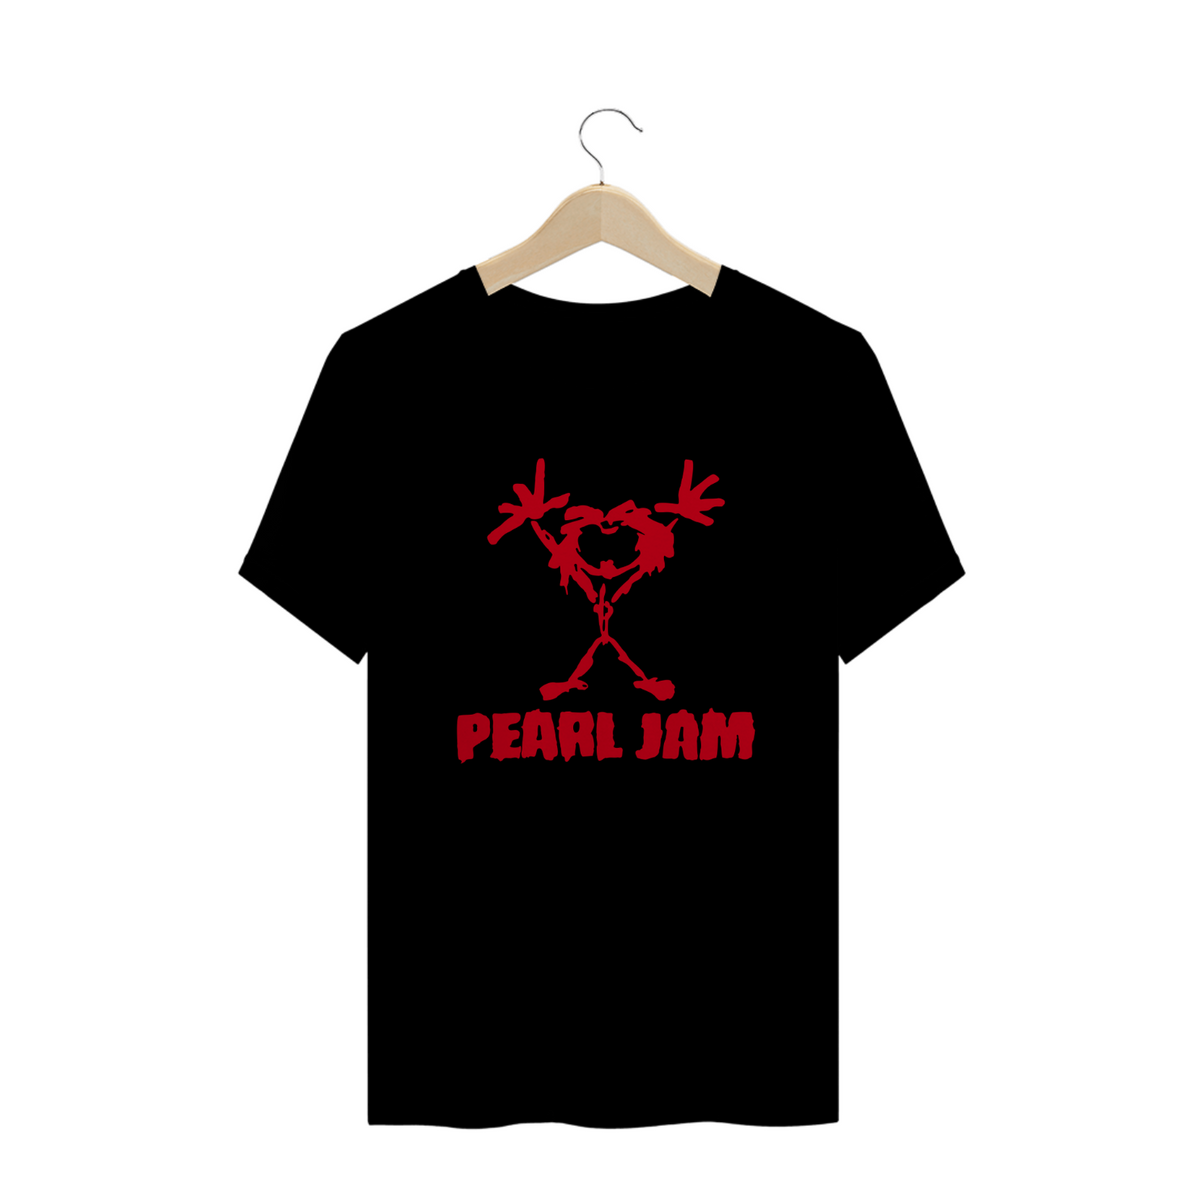 Nome do produto: Bandas - Camisa Pearl Jam